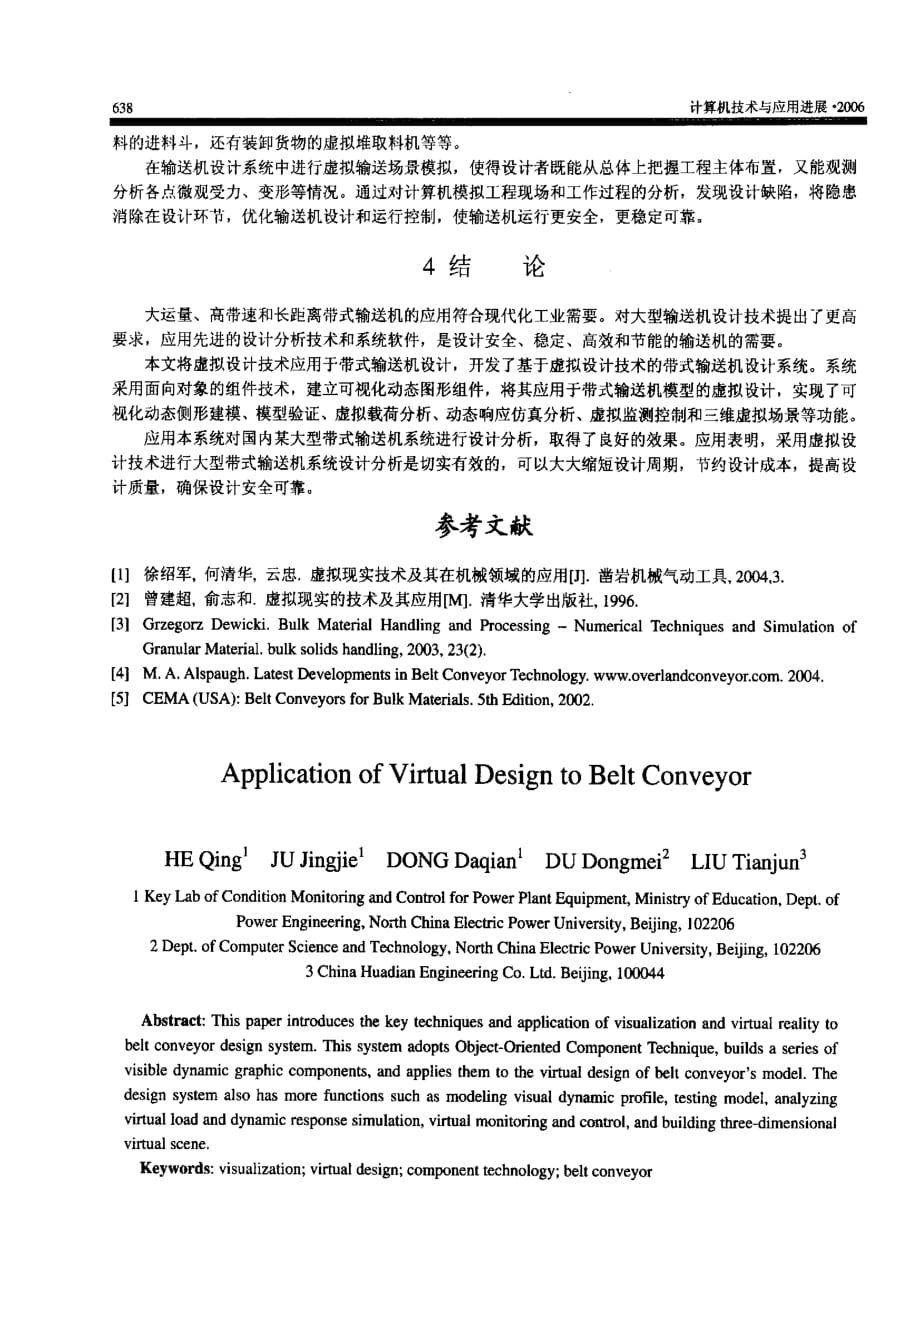 虚拟设计技术在带式输送机设计中的应用_第4页